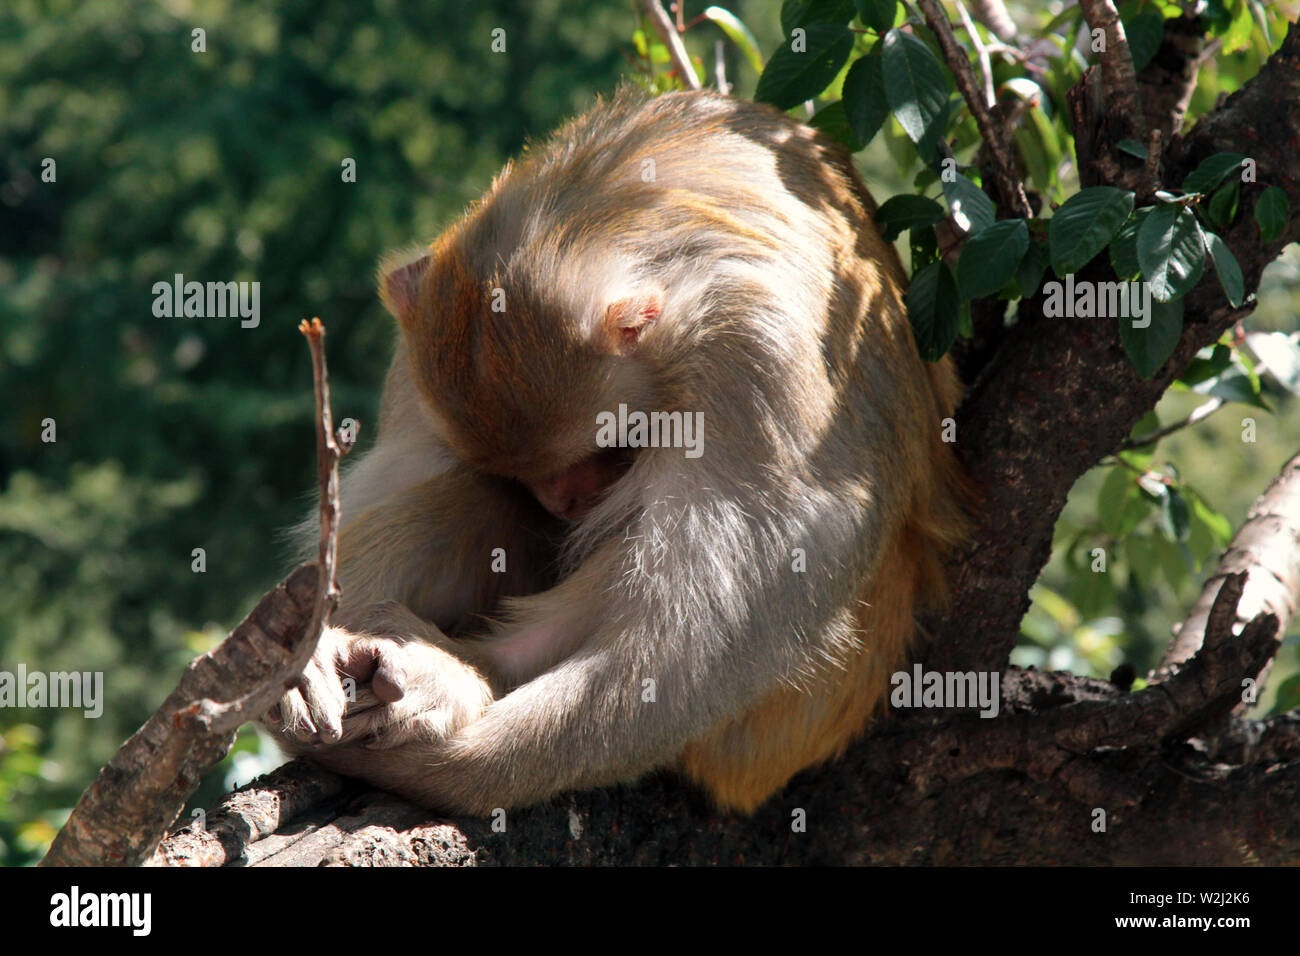 Diese Macaque Rhesusfaktor wandte (HID) von der Linse. Die Linse ähnelt für Tierprodukte eine große räuberische Auge. Ethologie, das Verhalten der Tiere Stockfoto